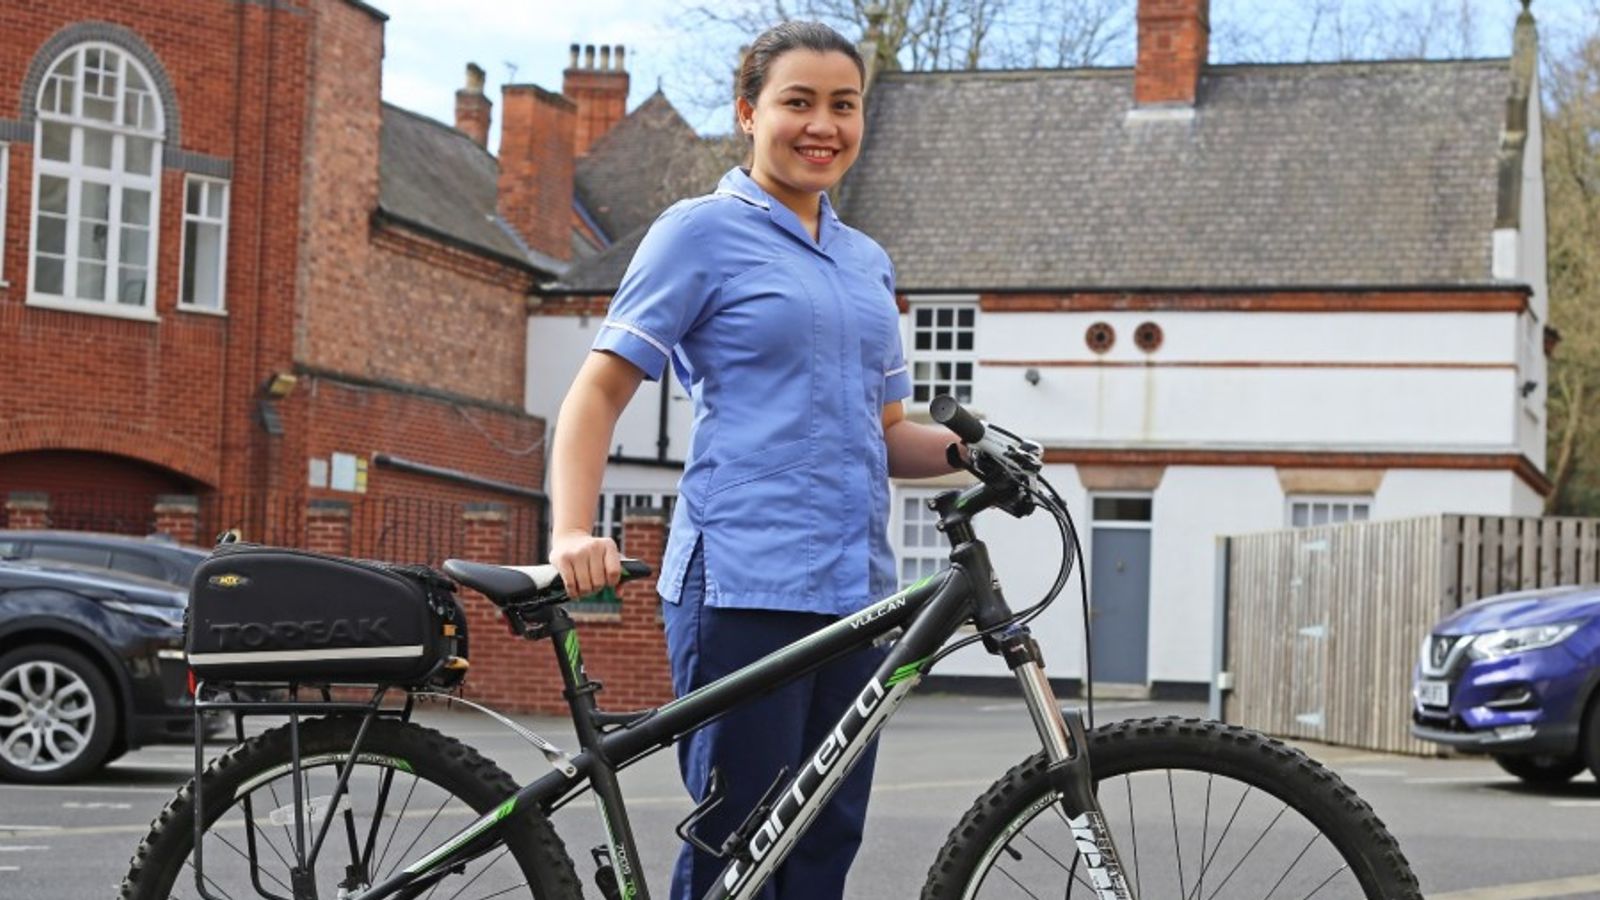 cycle to work scheme bike stolen